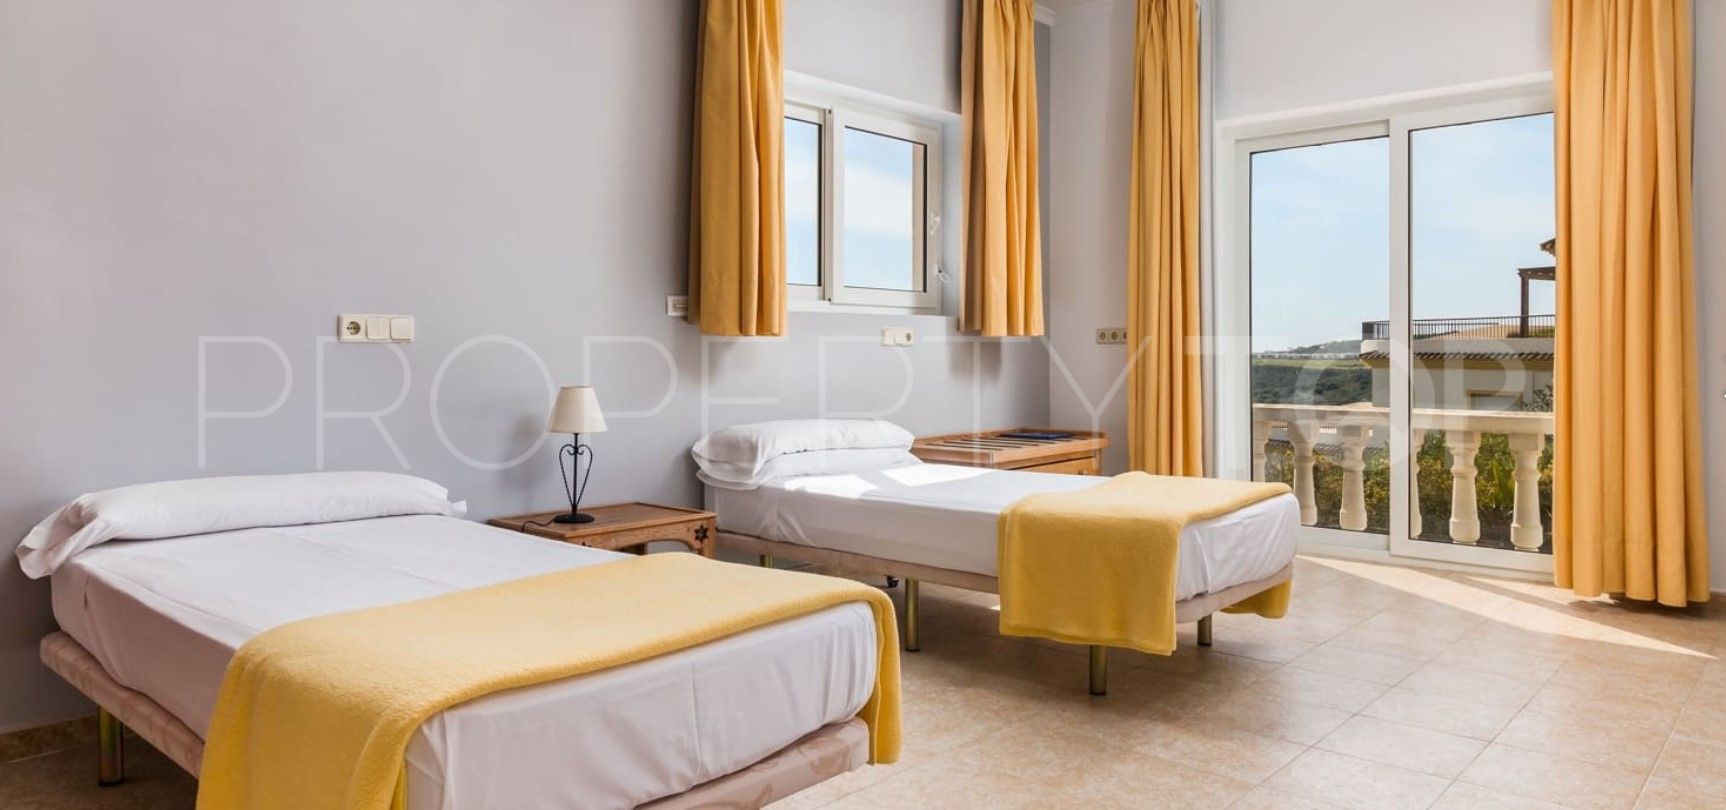 Comprar hotel en San Roque con 84 dormitorios